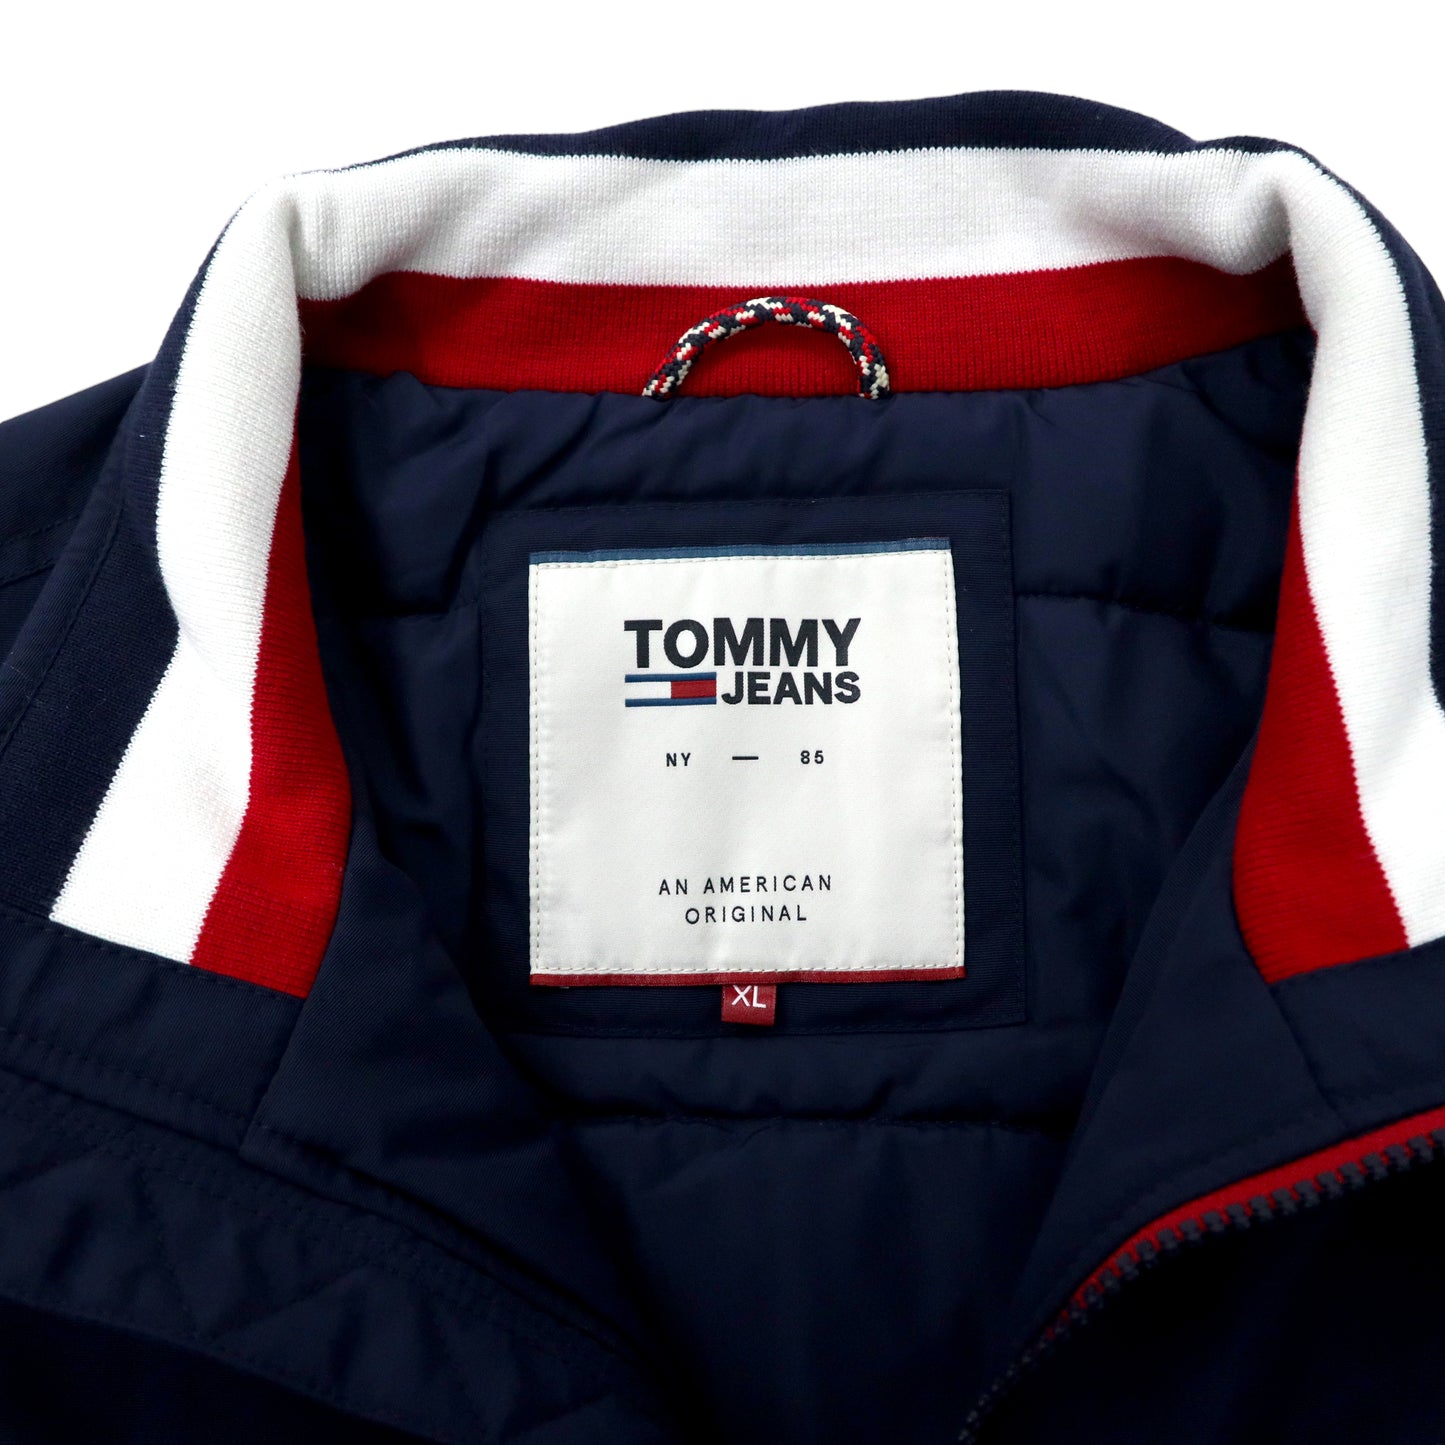 TOMMY JEANS パデッドジャケット XL ネイビー ポリエステル 中綿 DM0DM06599